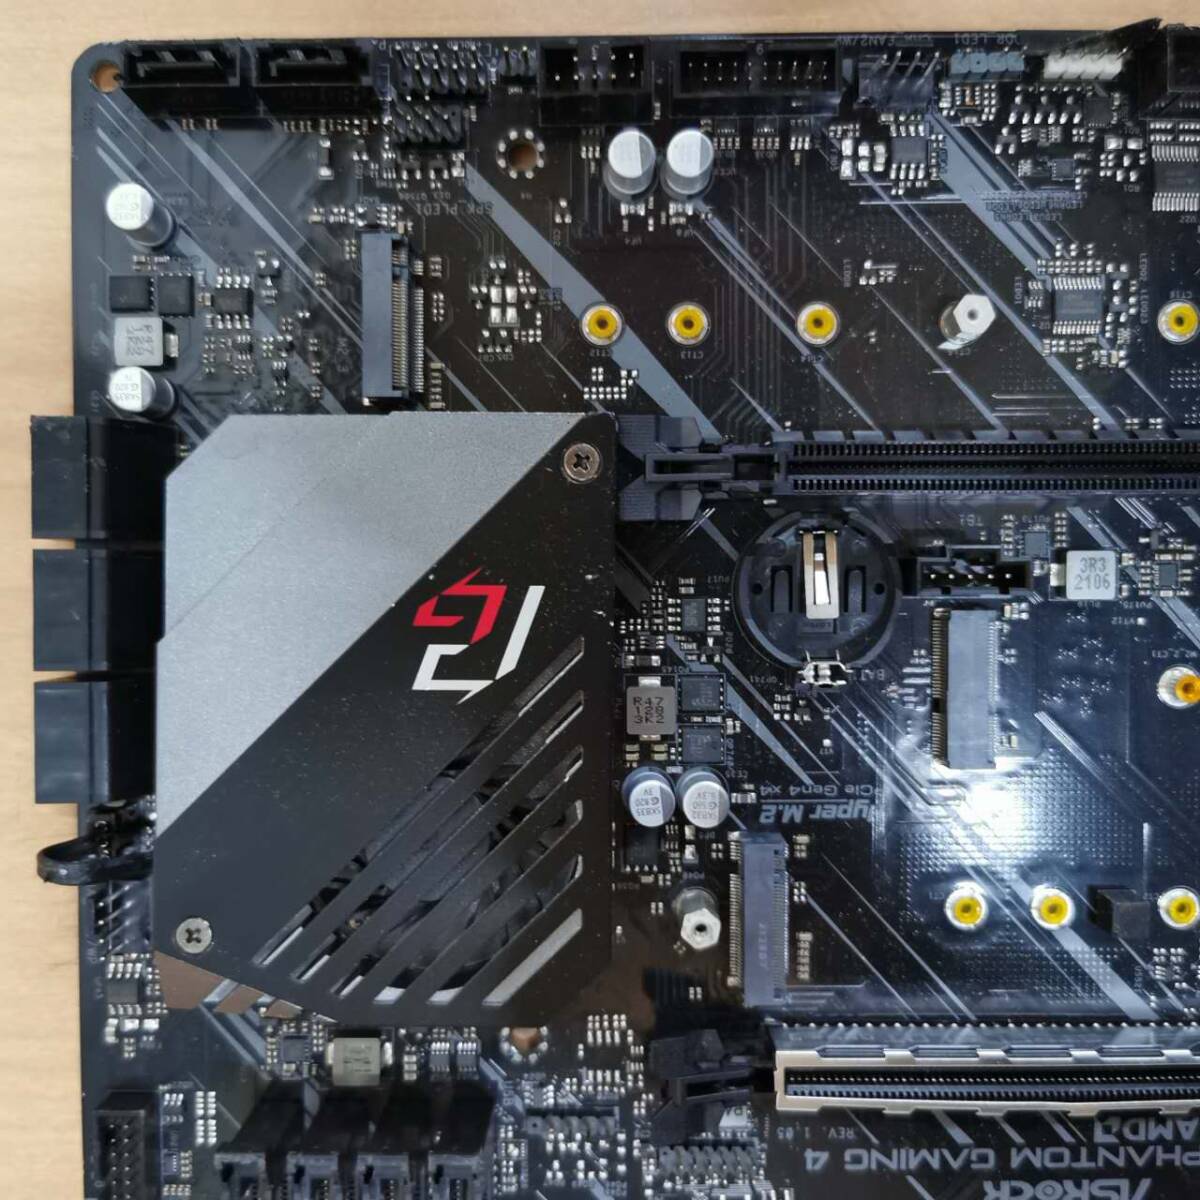 ASRock X570 phantom gaming 4//ATX материнская плата /AMD AM4 Ryzen 4000,5000 соответствует /PC детали собственное производство PC DIY ремонт материал * электризация,BIOS проверка только 